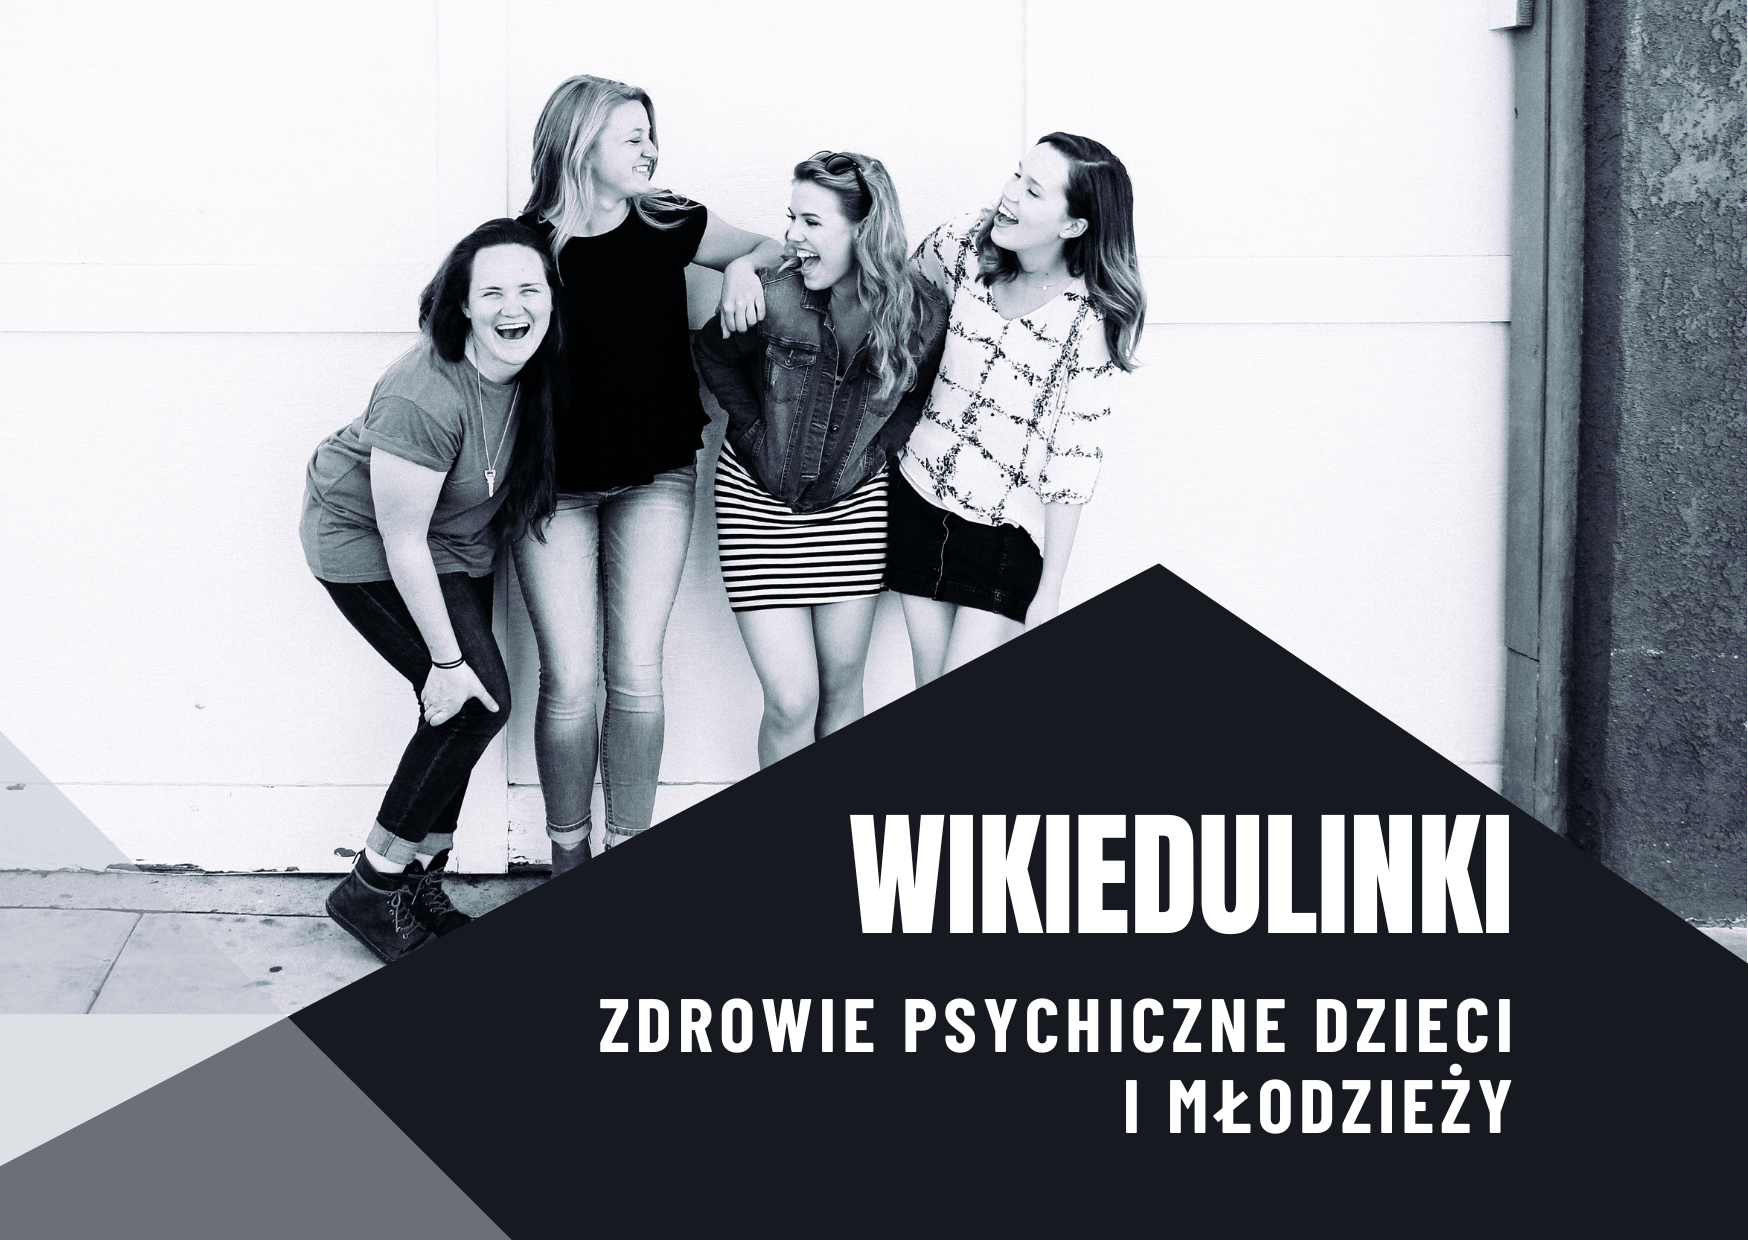 WikiEduLinki - Zdrowie psychiczne dzieci i młodzieży